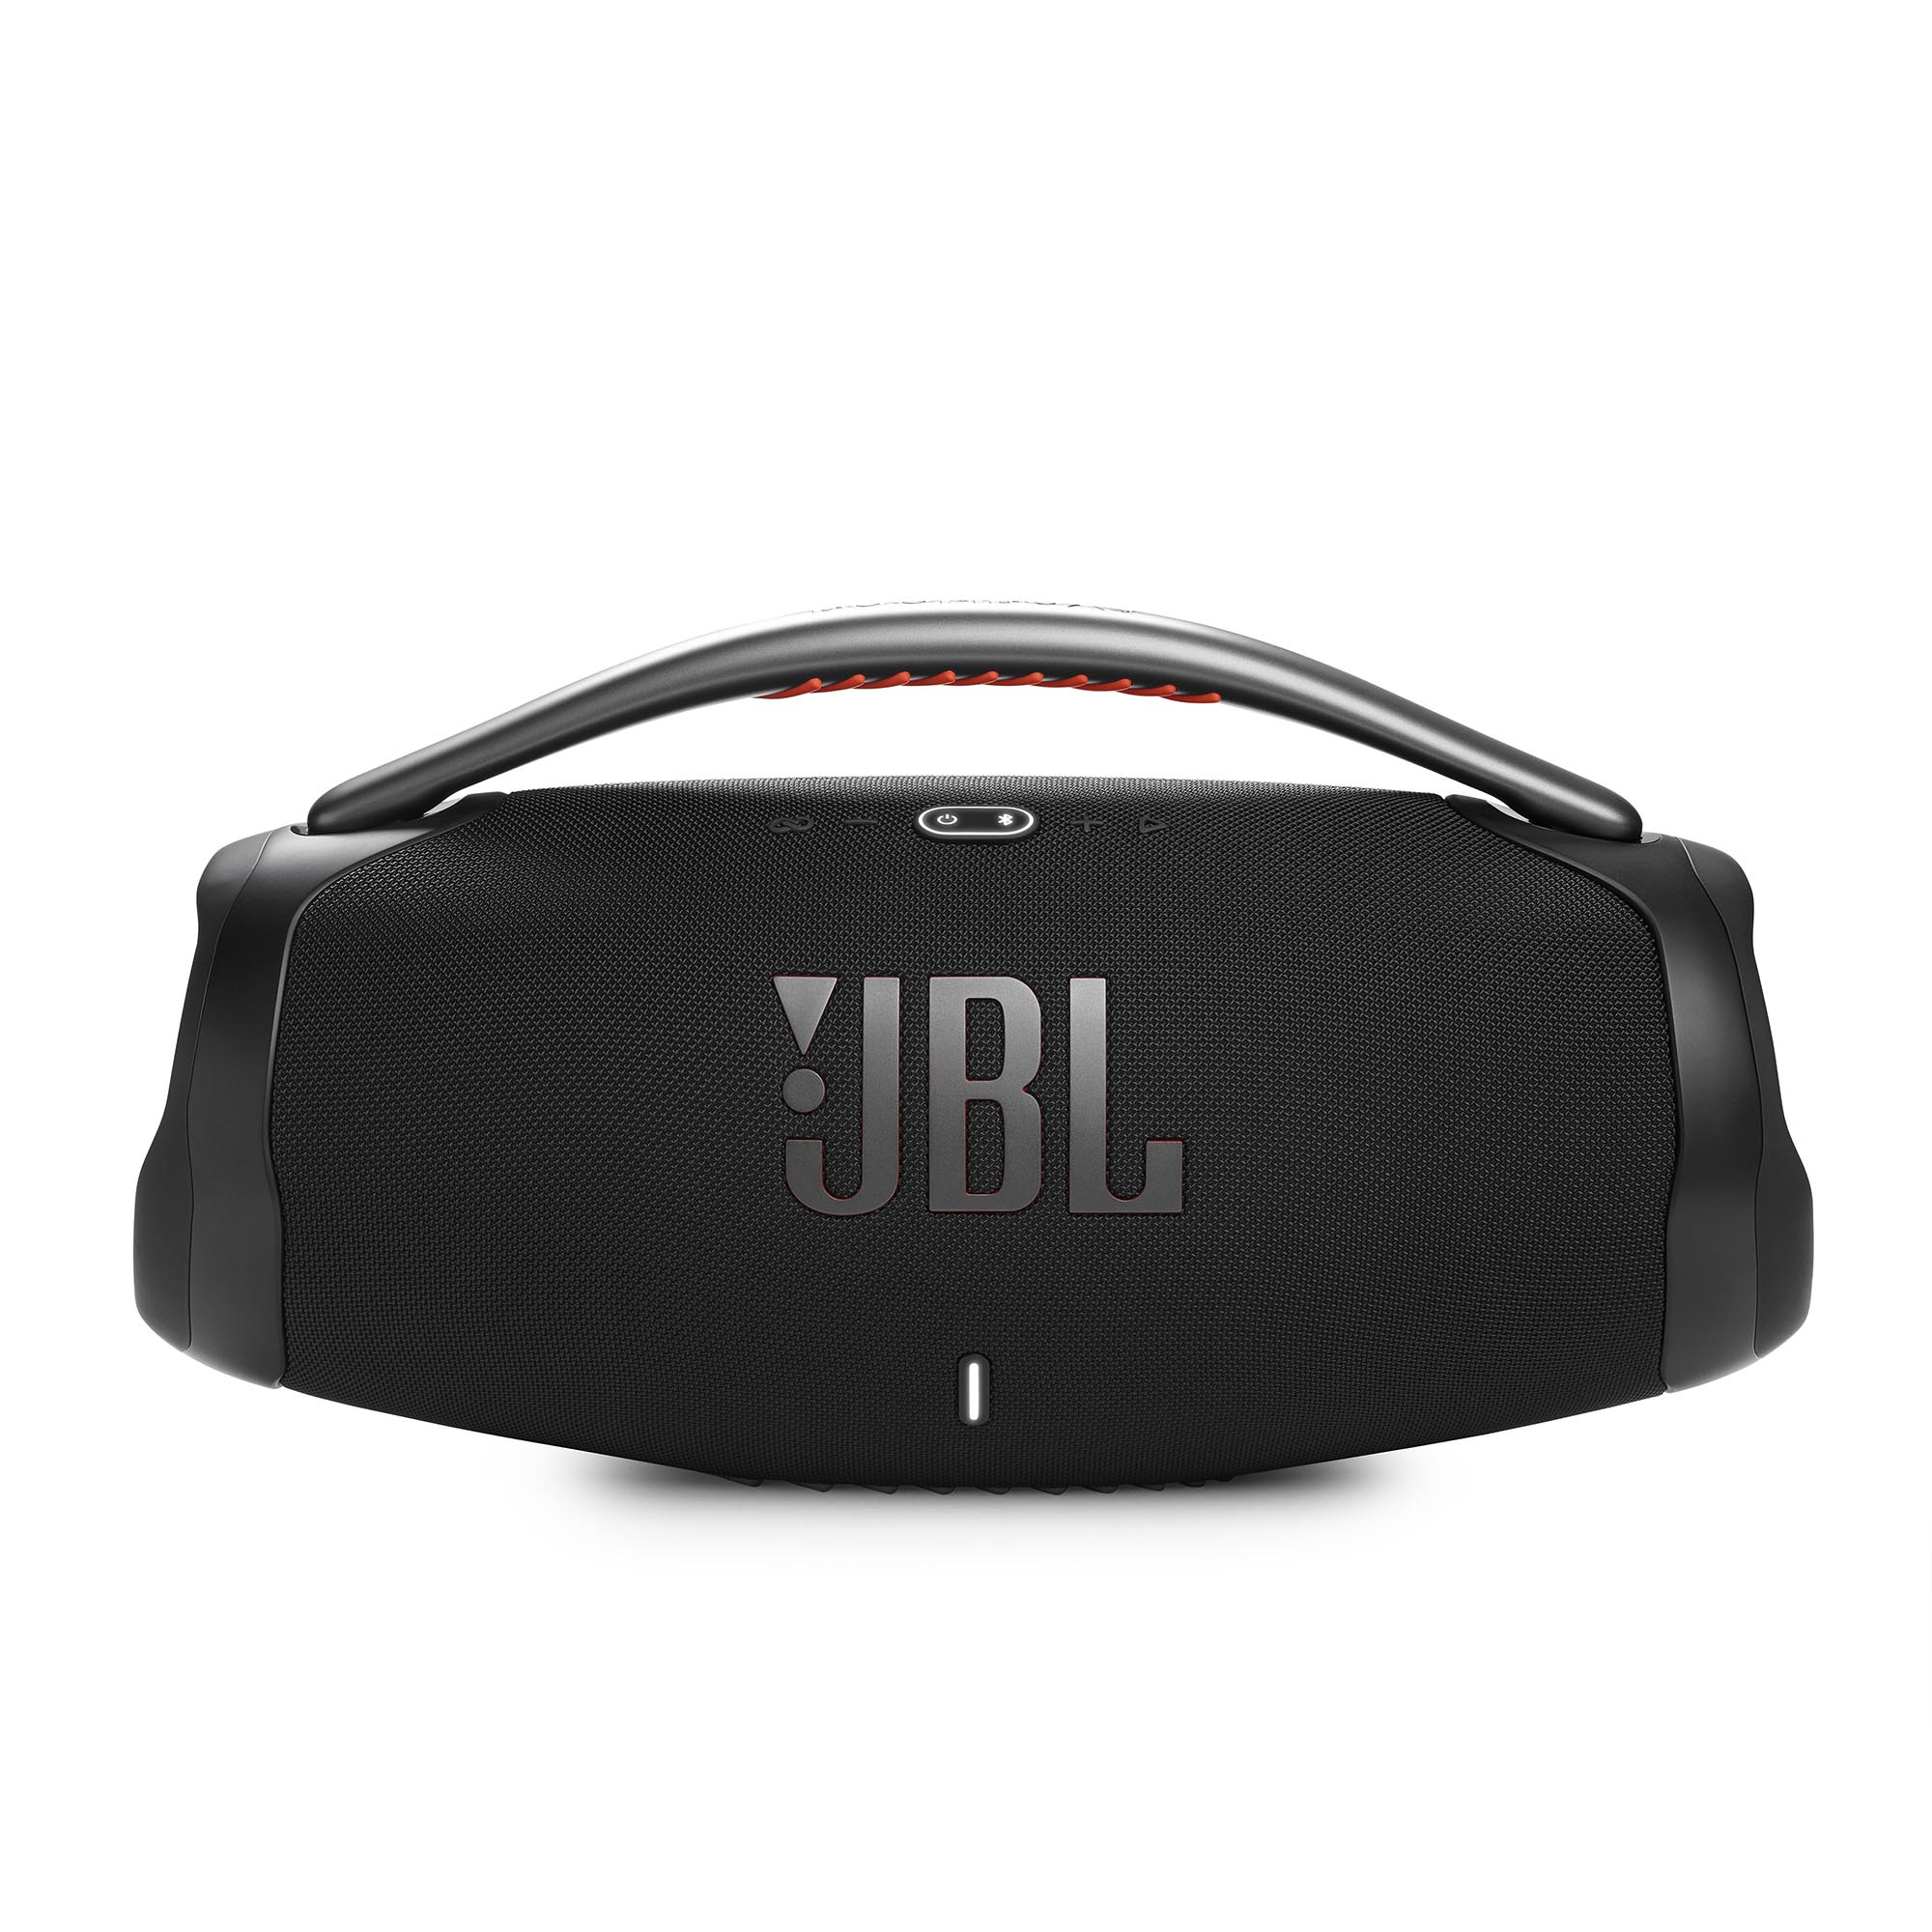 JBL、防塵防水設計のポータブルBluetoothスピーカー「BOOMBOX